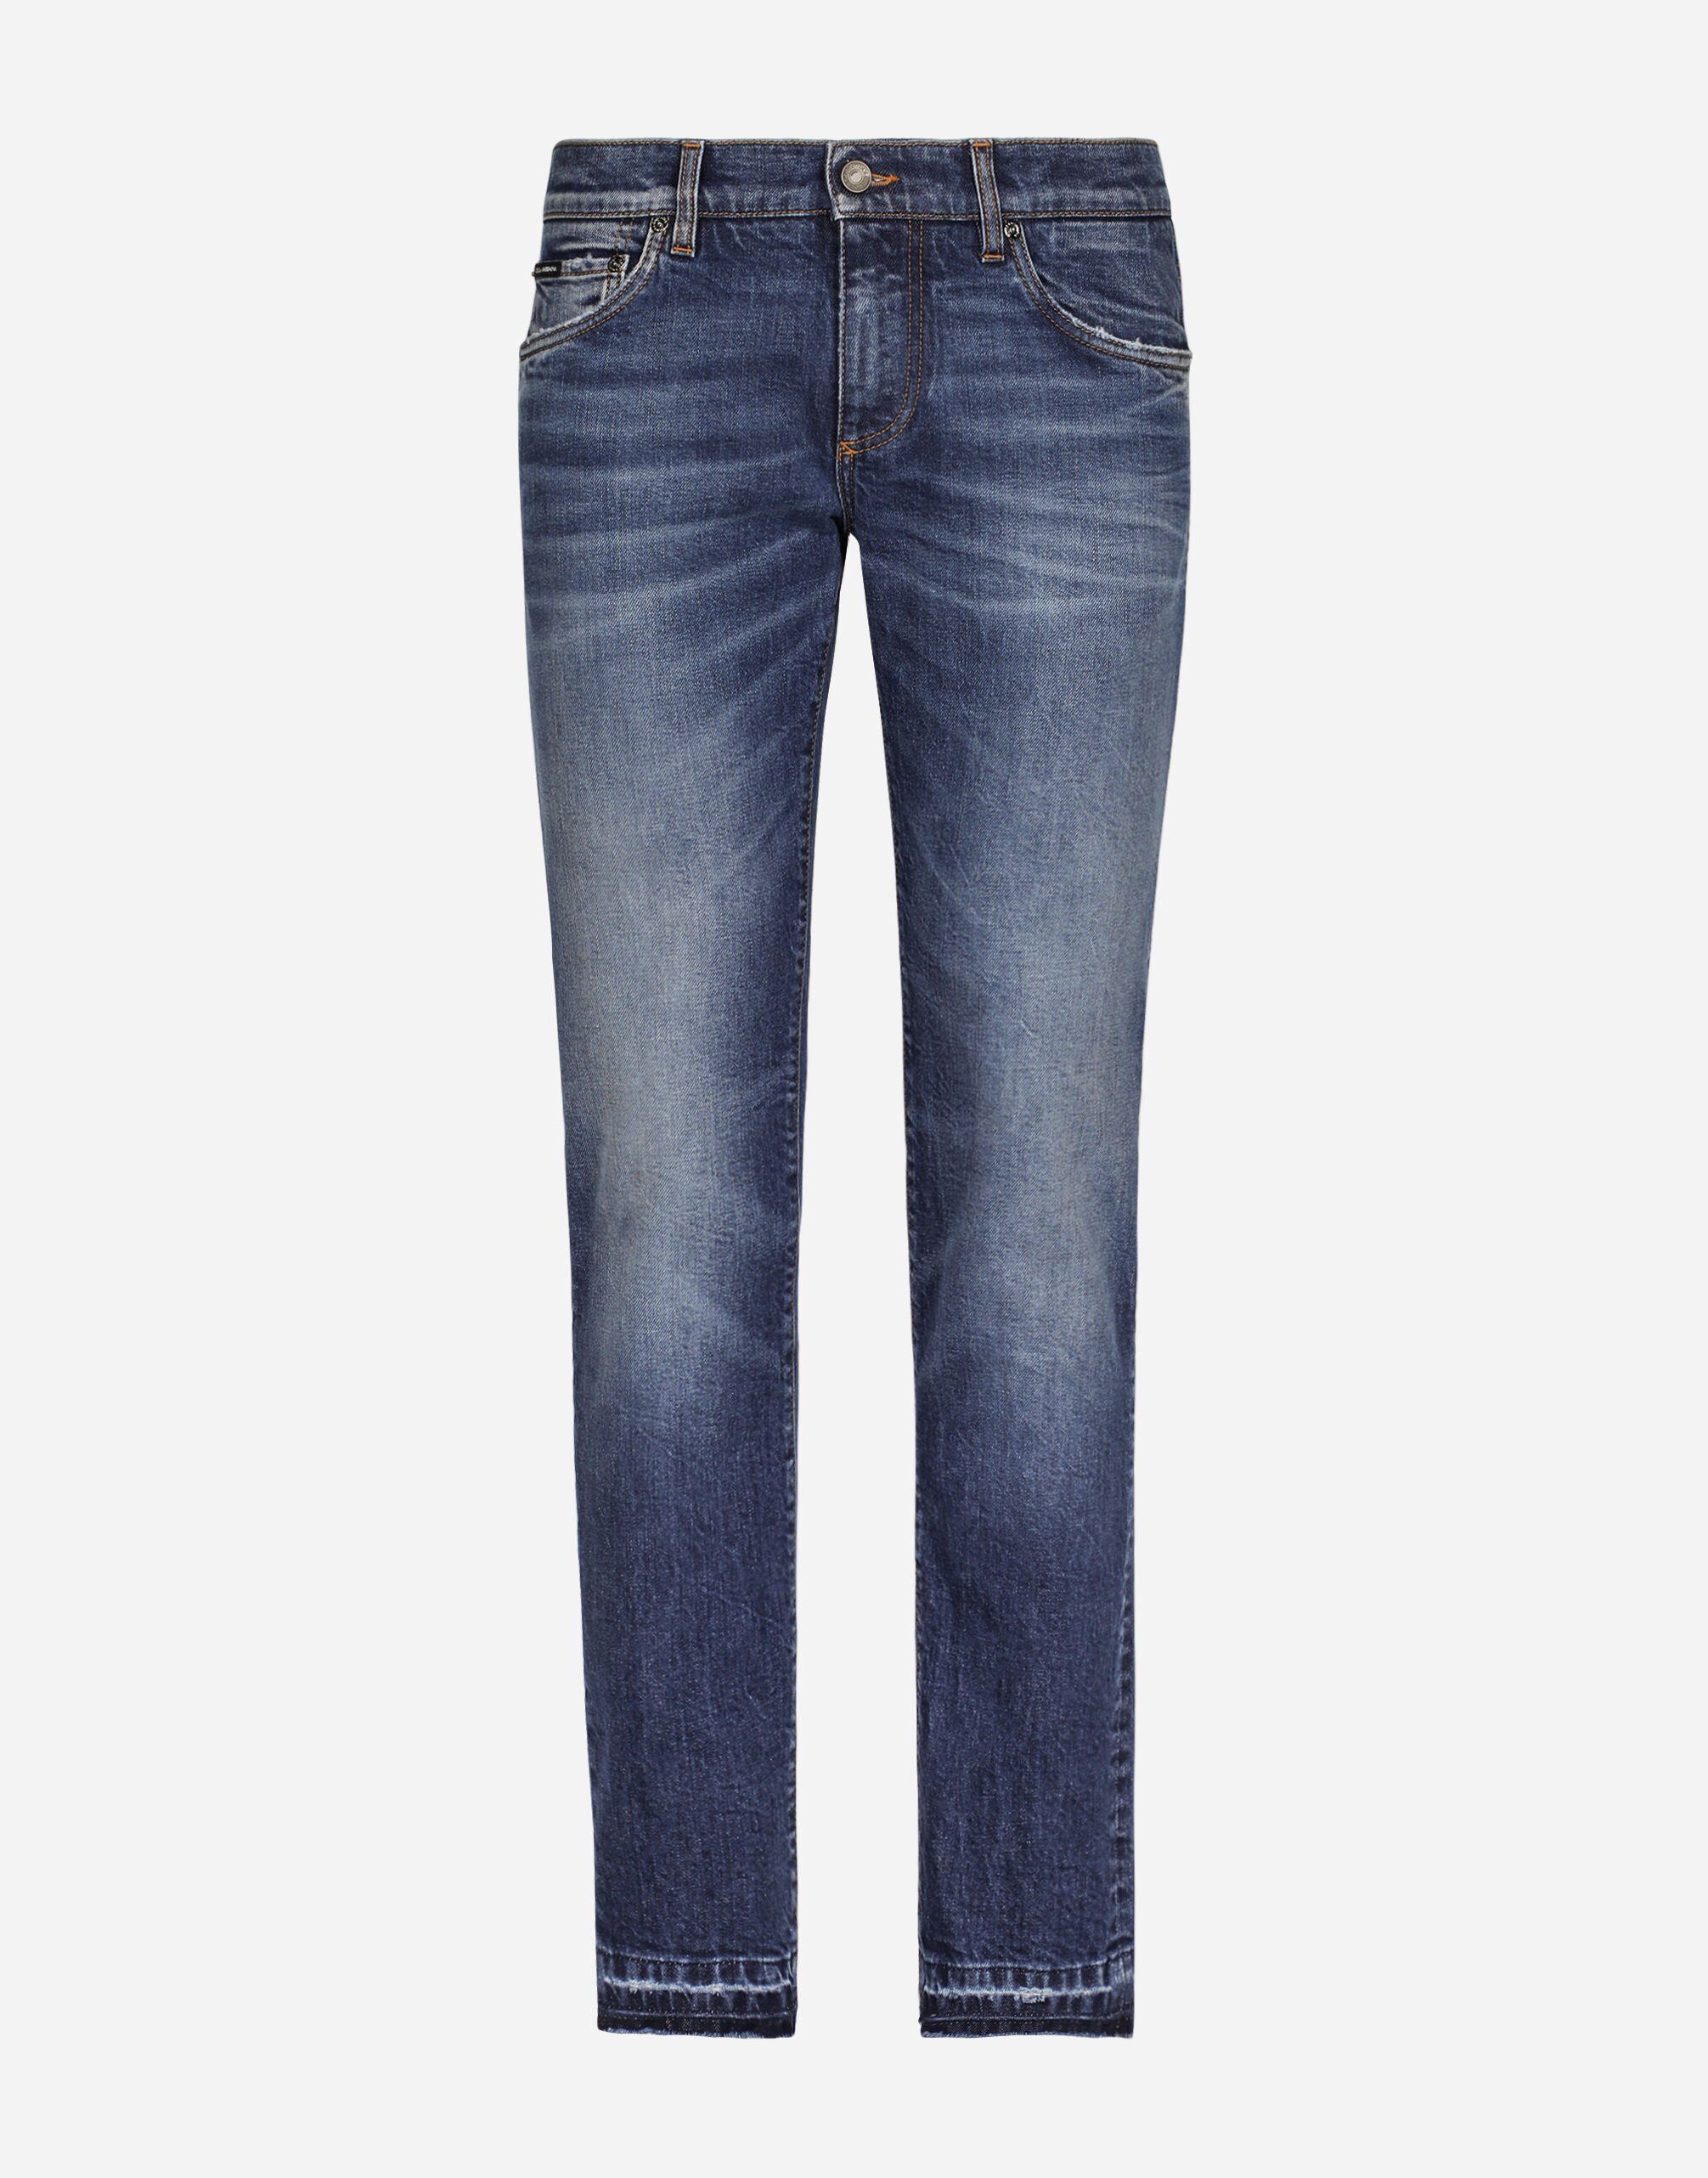 Dolce&Gabbana Jeans Skinny Stretchdenim gewaschen Mehrfarbig G2QU6TFRBCH